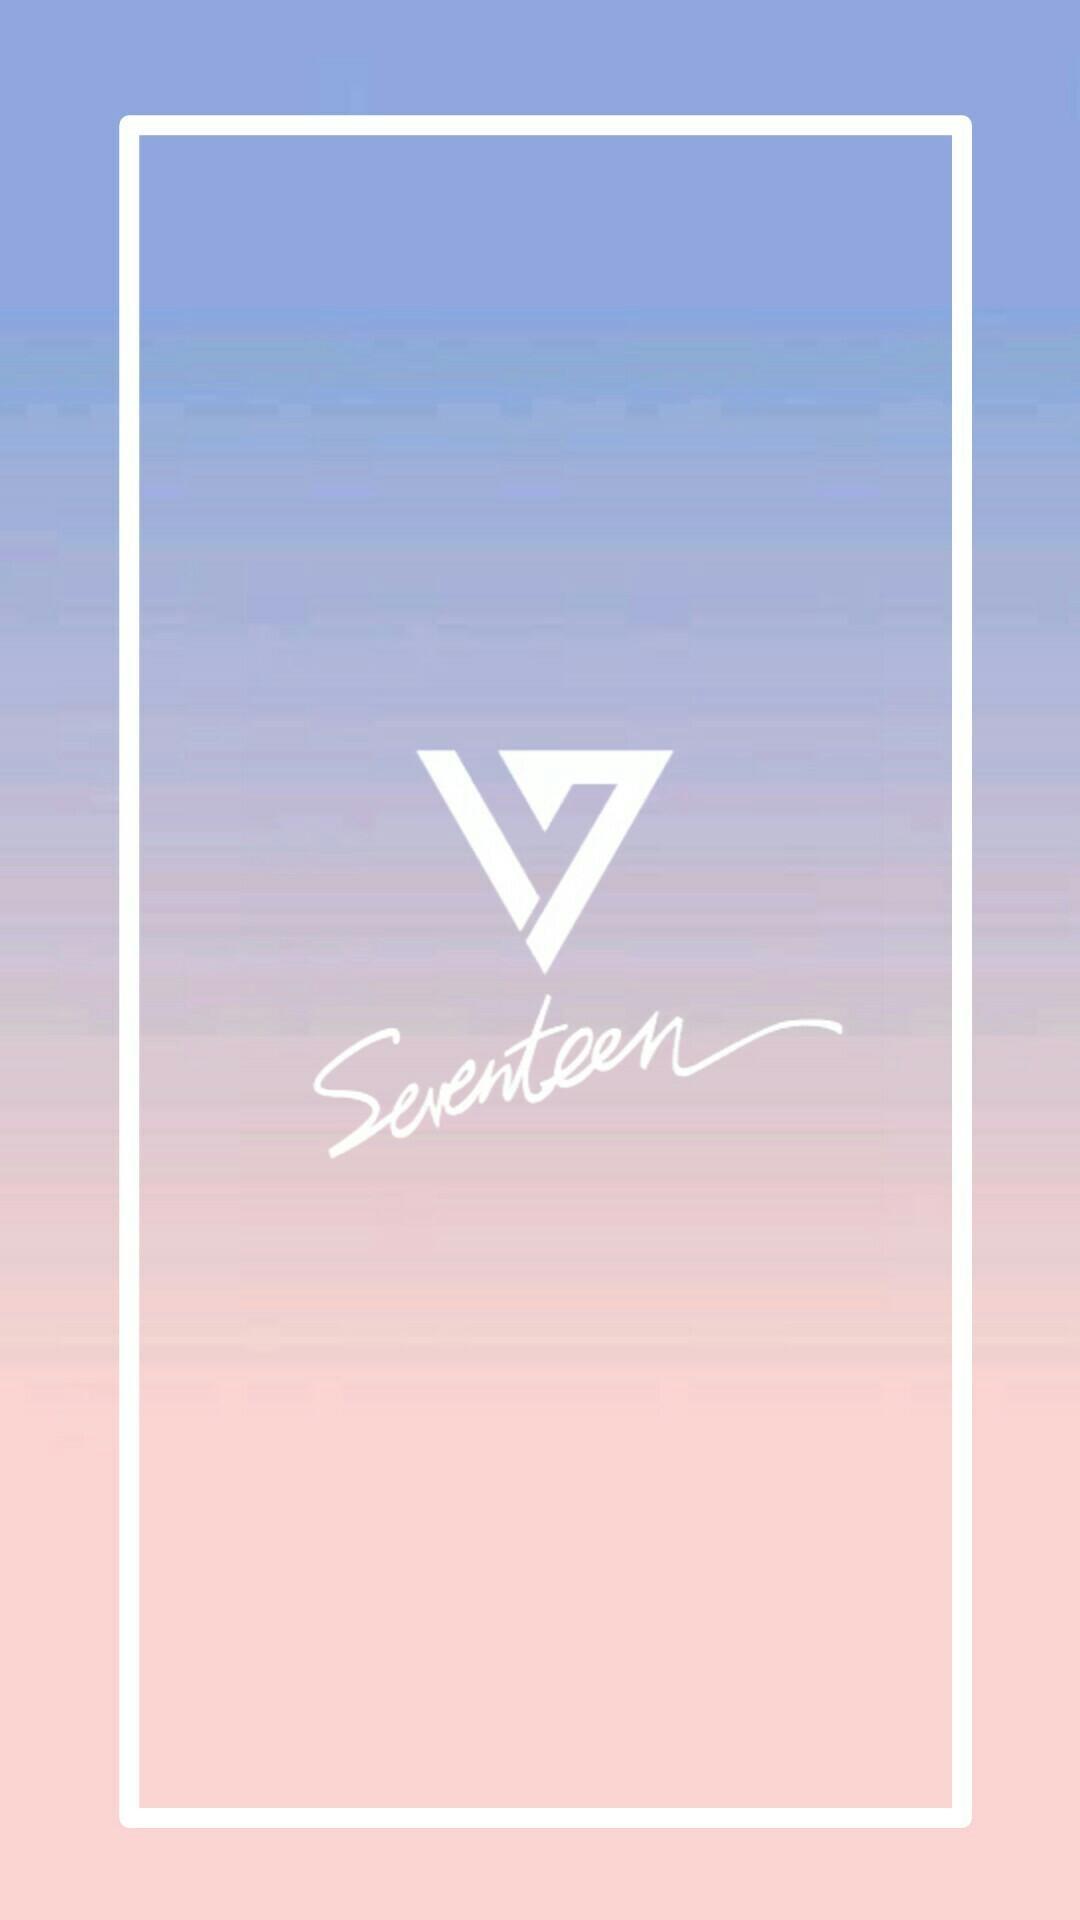 seventeen logo